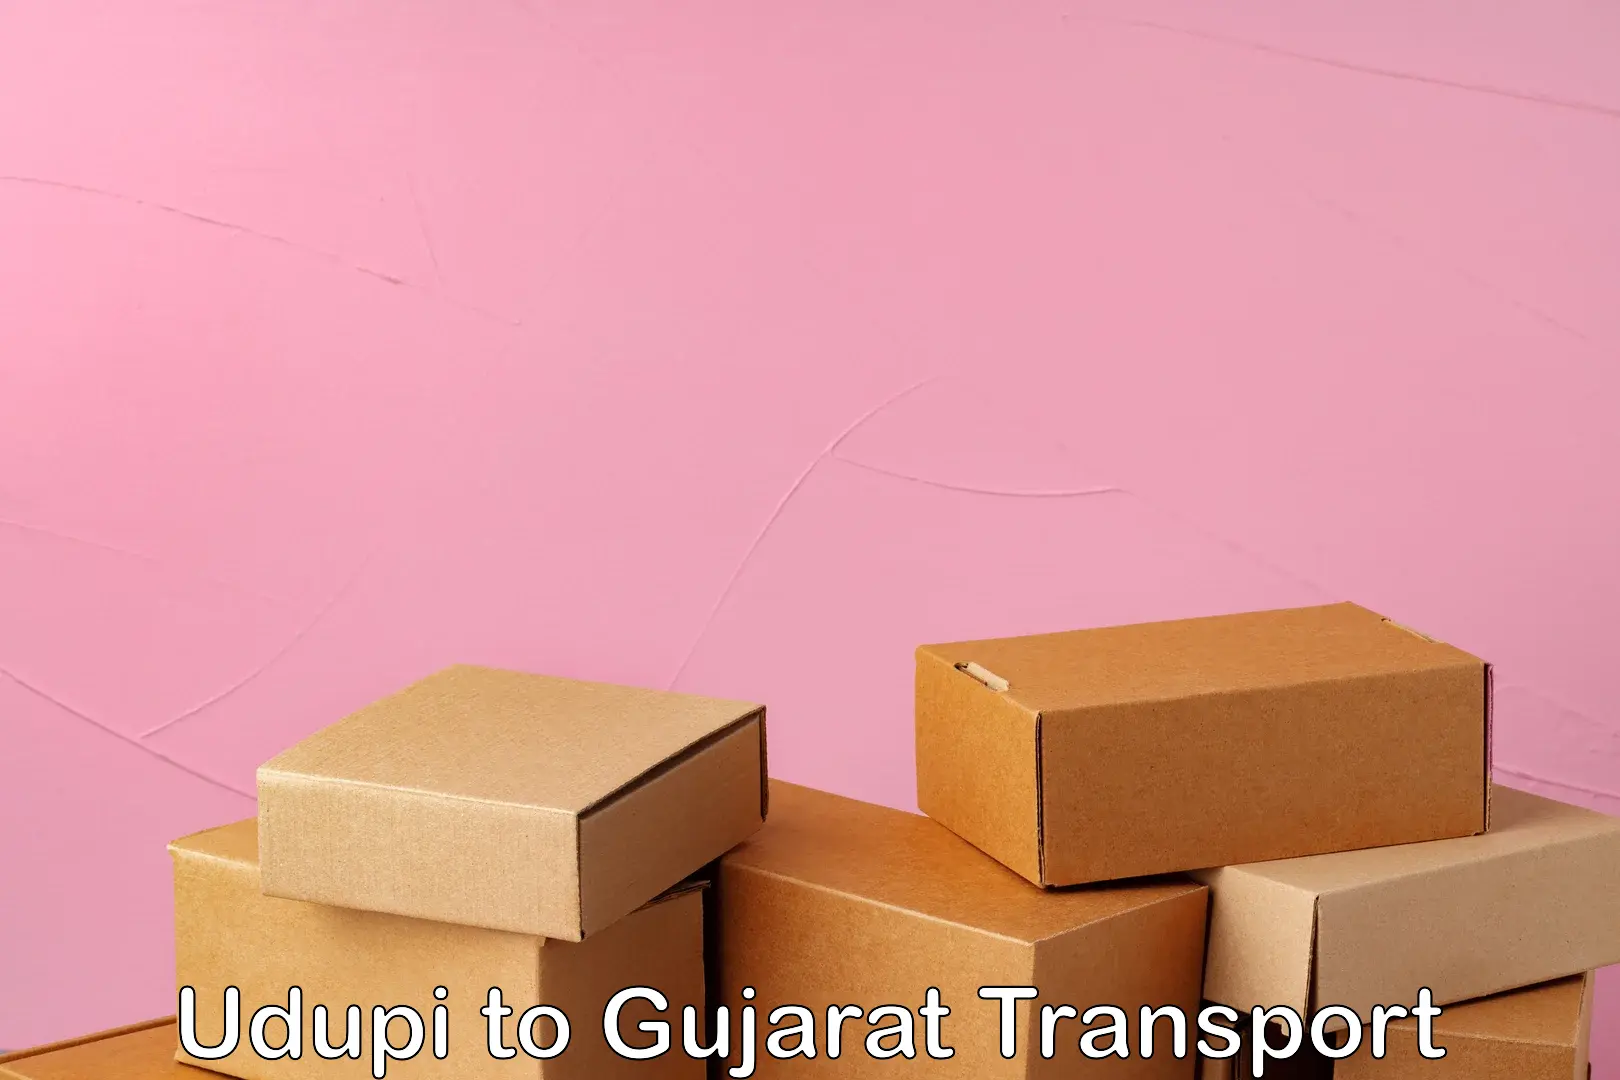 Delivery service Udupi to Gujarat